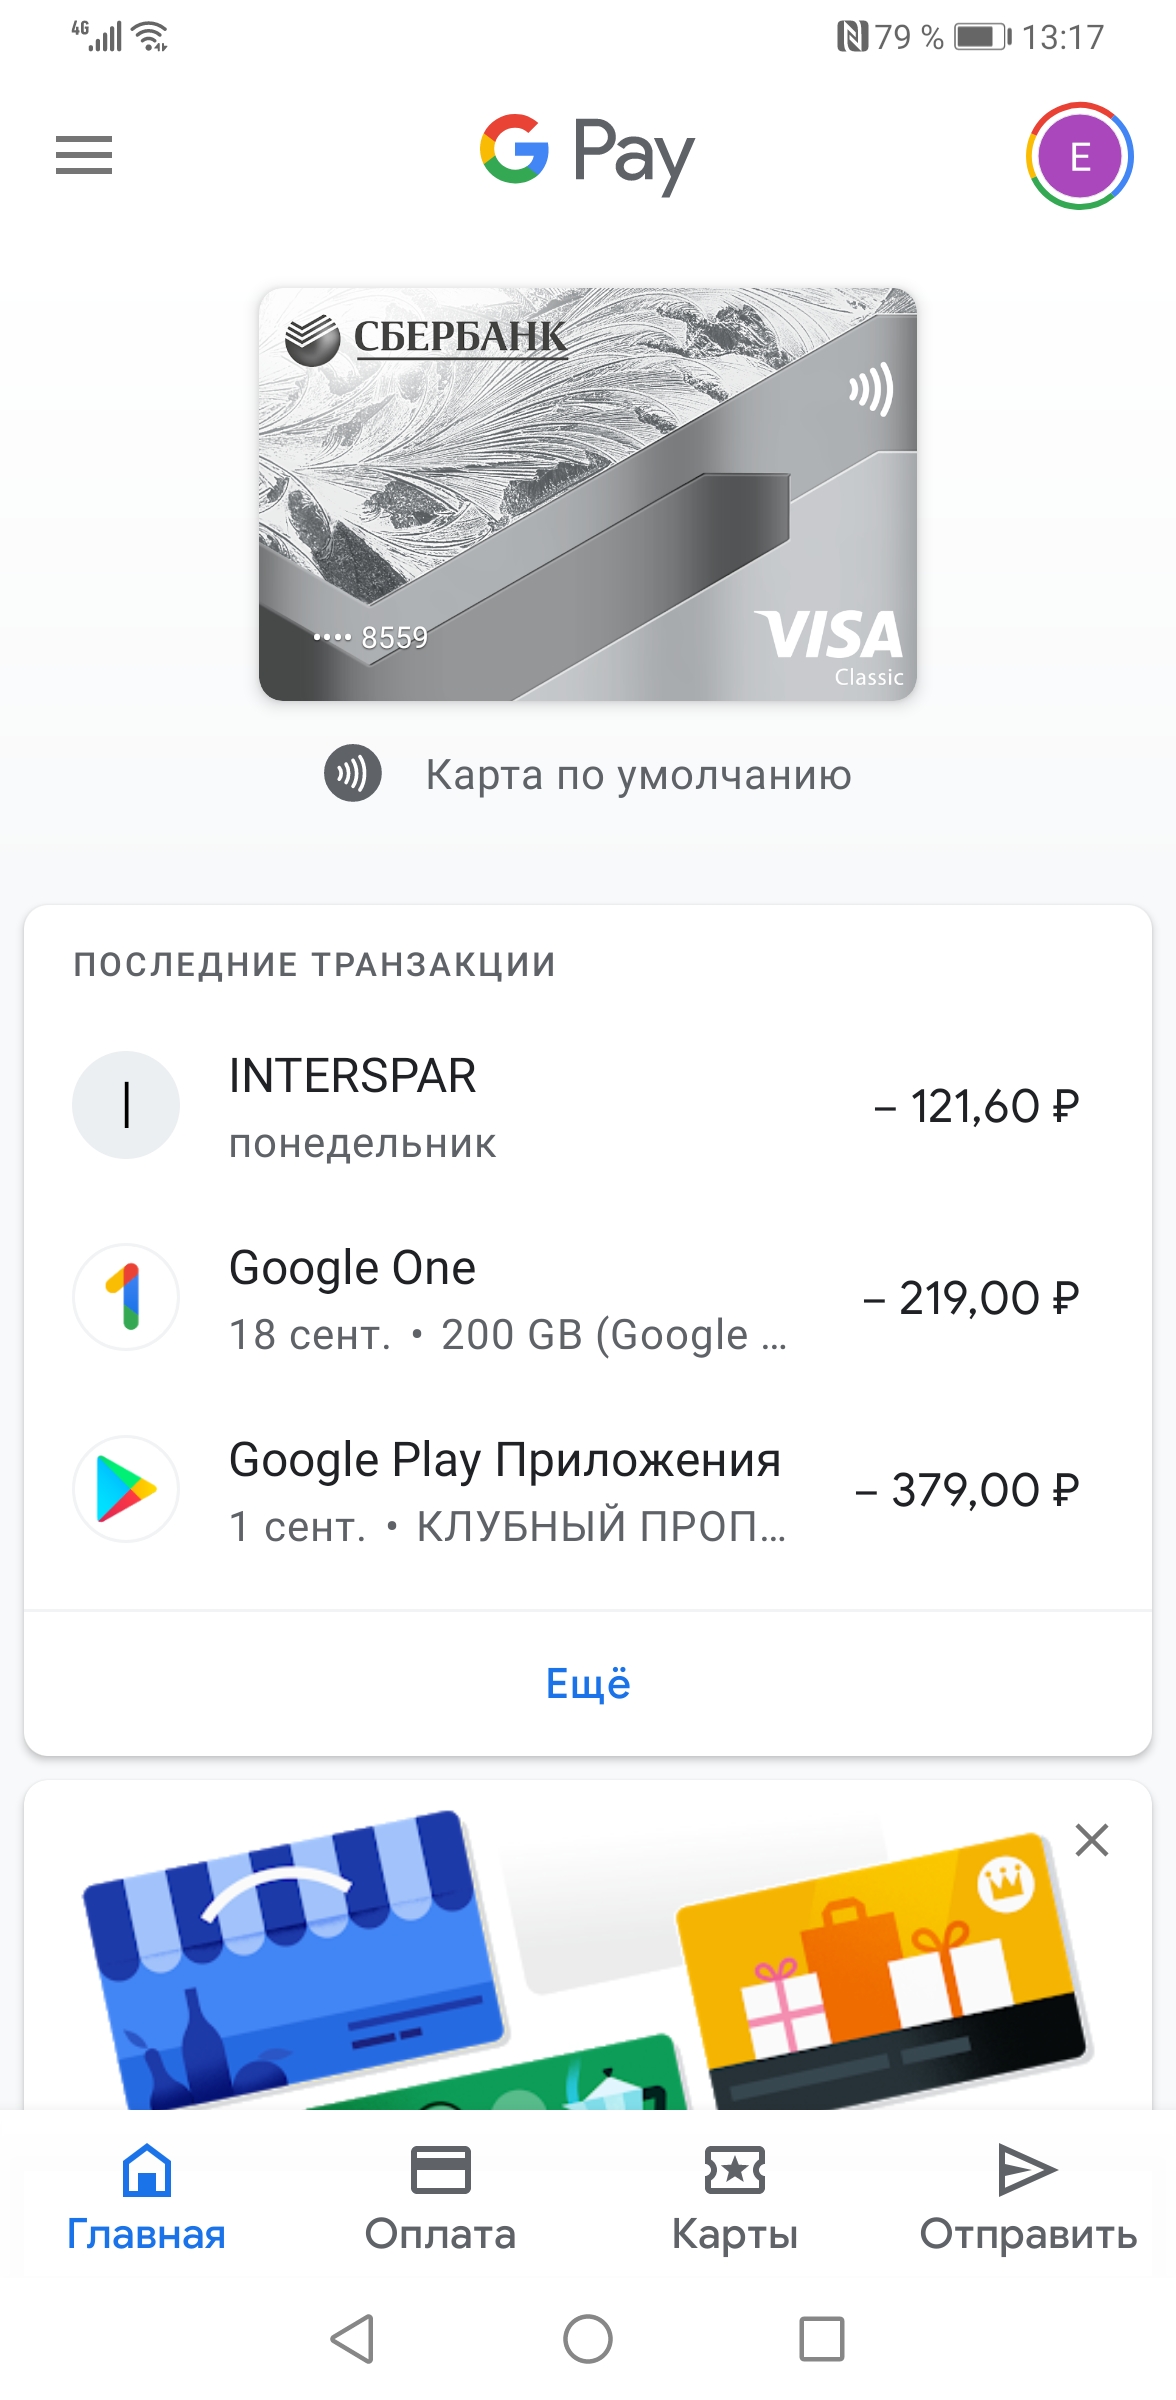 Google pay не открывает карты